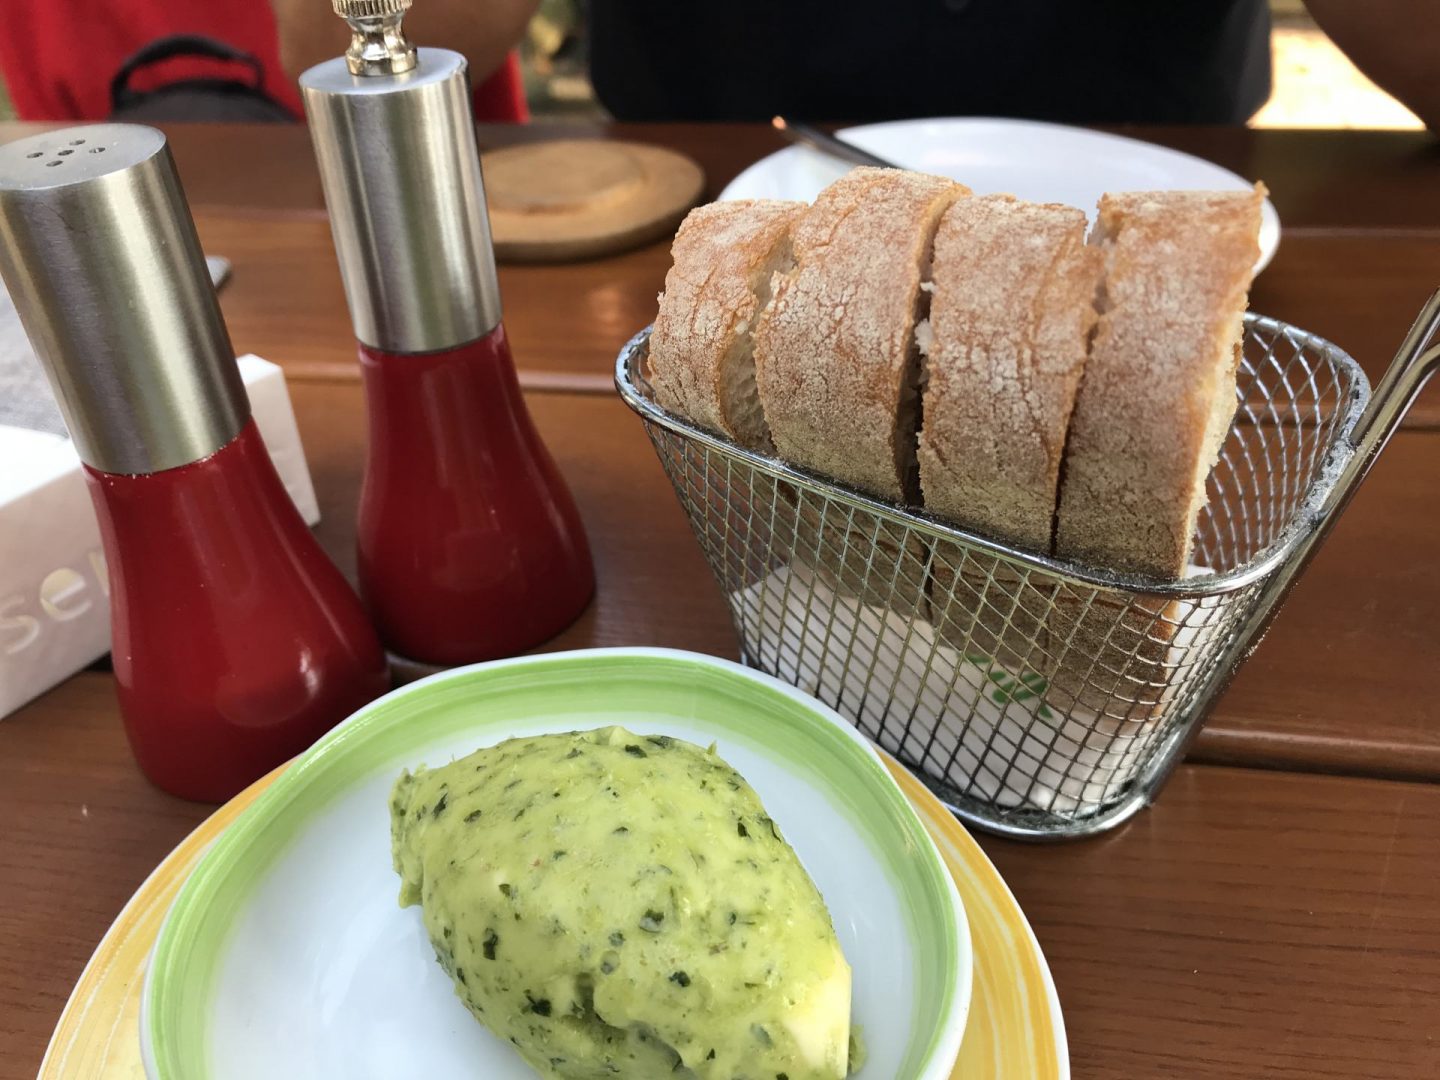 Erfahrung Bewertung Kritik Ollis Restaurant Herne Brot Petersilienbutter Foodblog Sternestulle